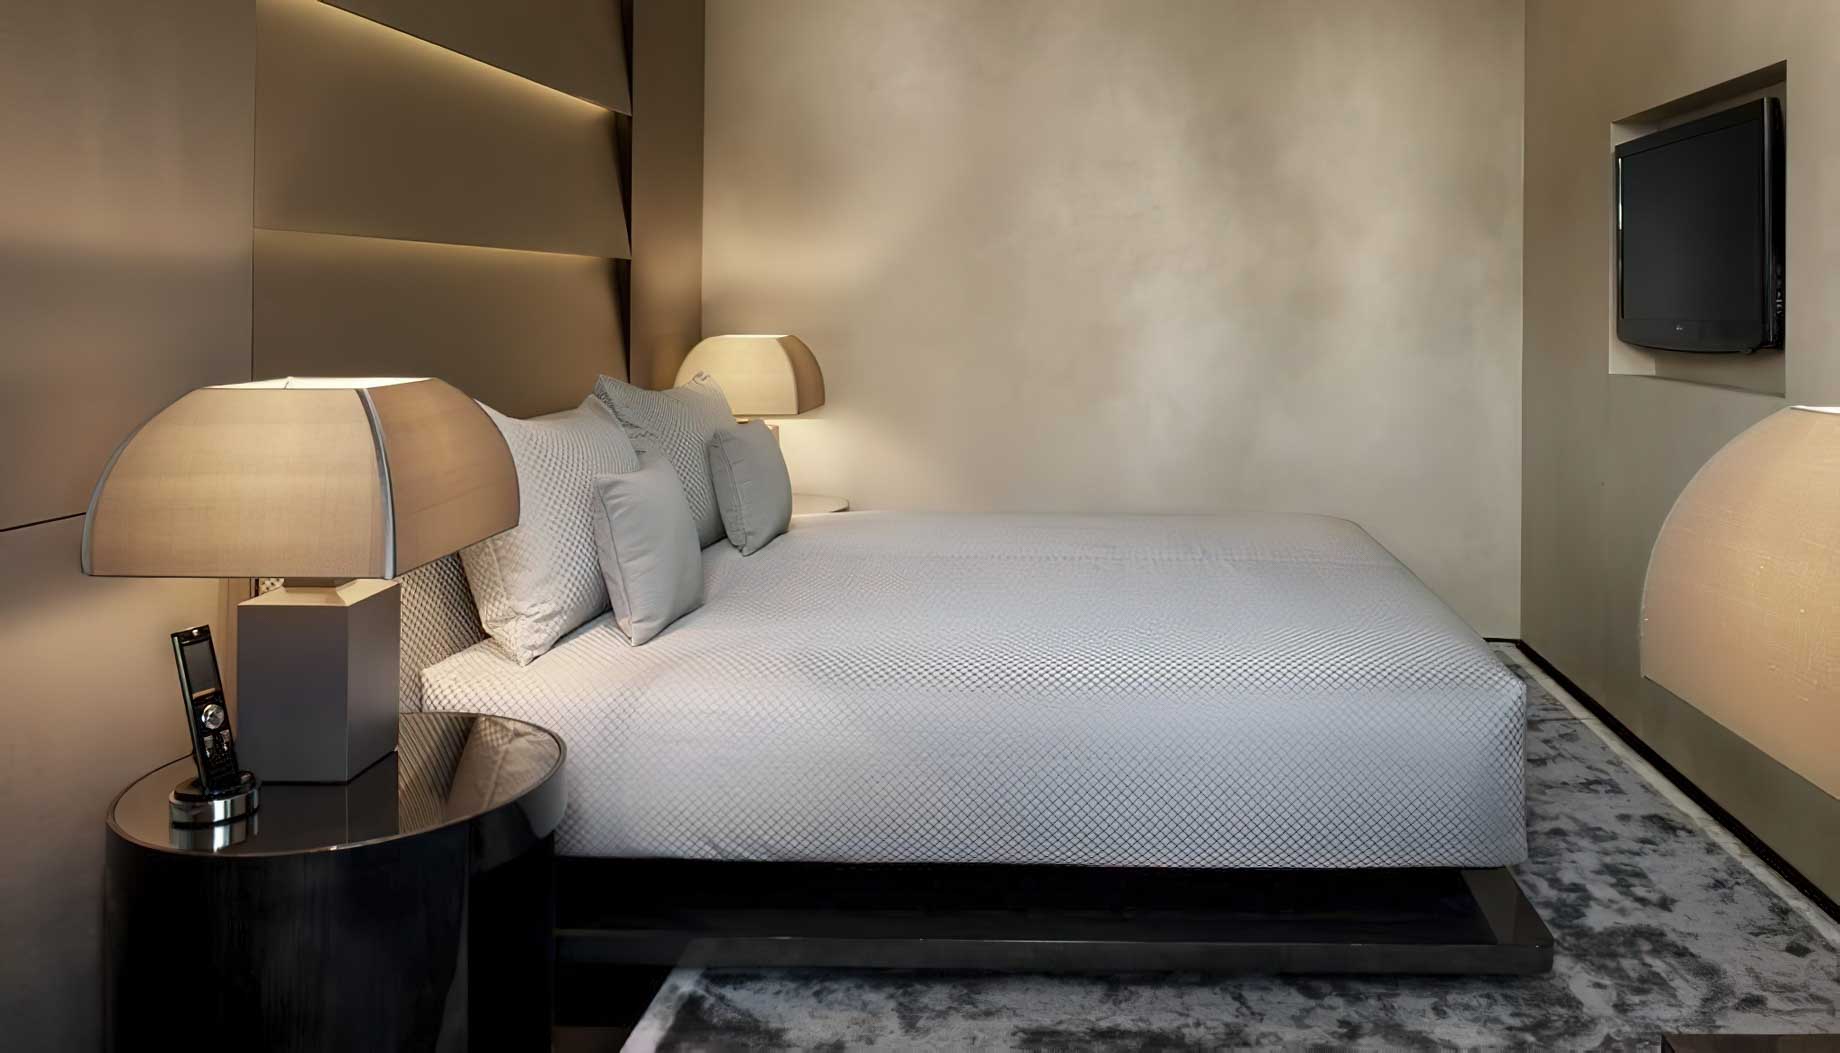 046 – Armani Hotel Milano – Milan, Italy – Armani Suite Bedroom